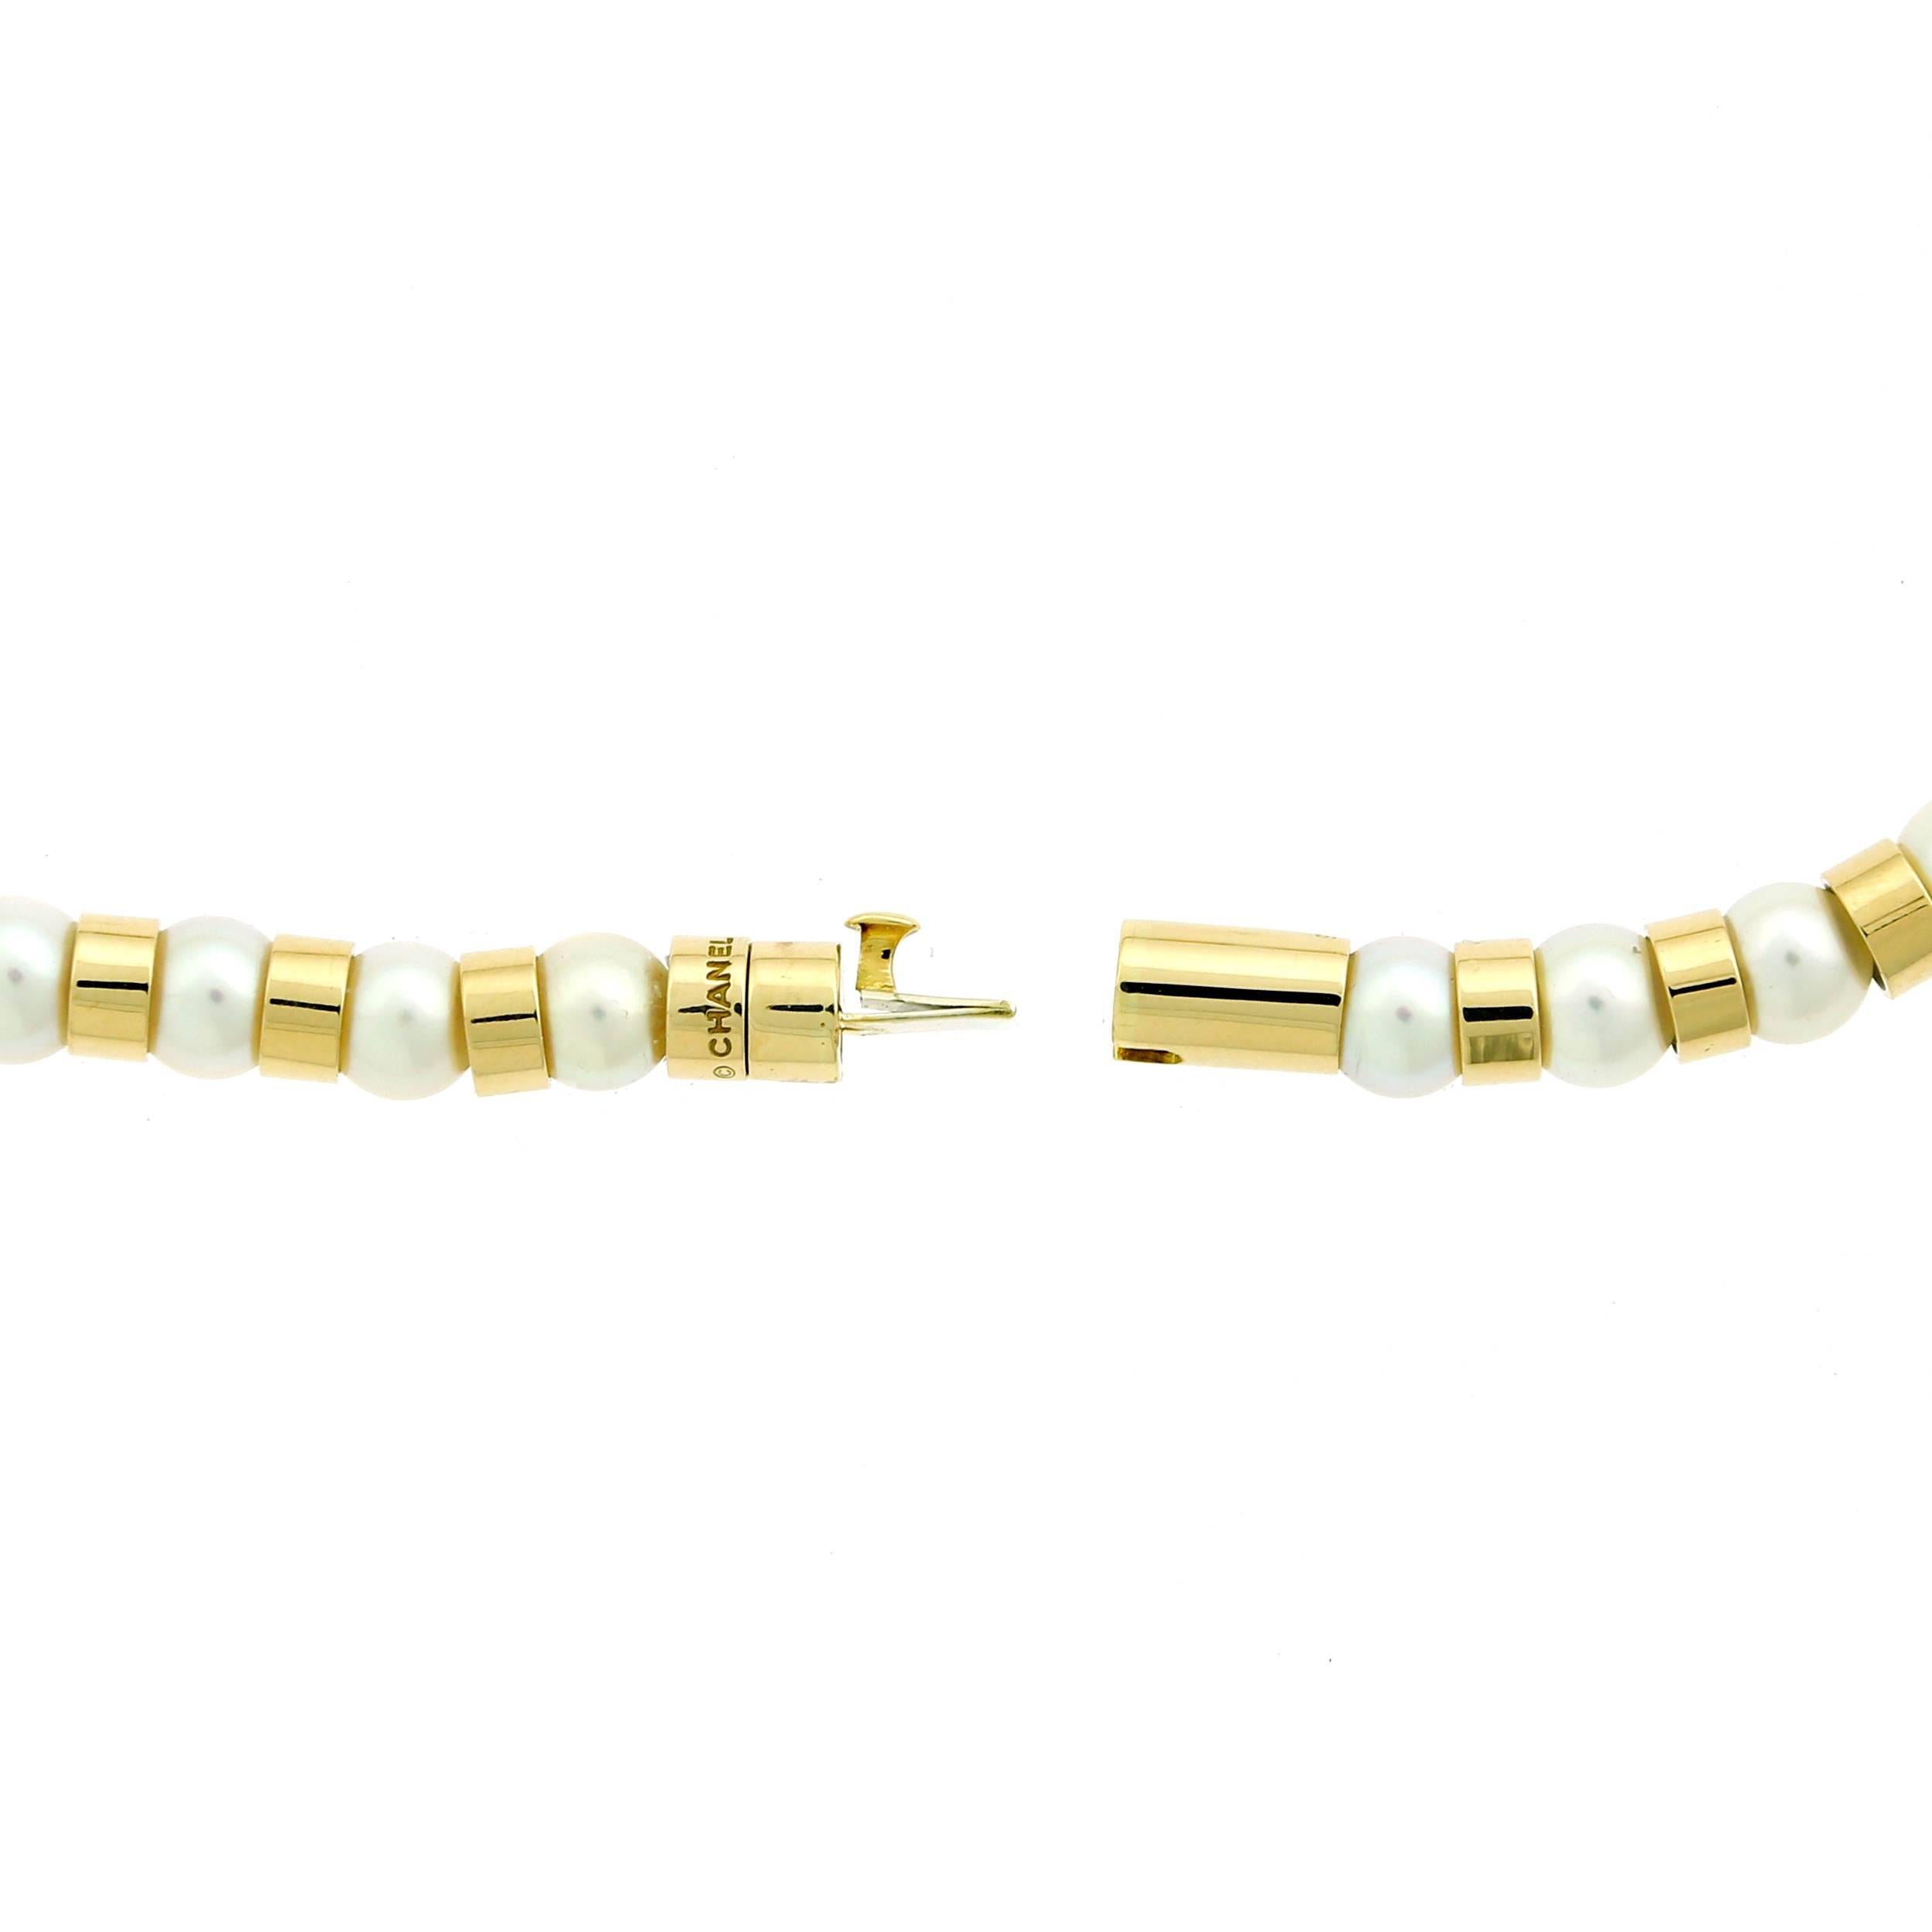 Un fabuleux collier Chanel avec des perles en or jaune 18k contrastant avec des perles. Le collier a une longueur de 15